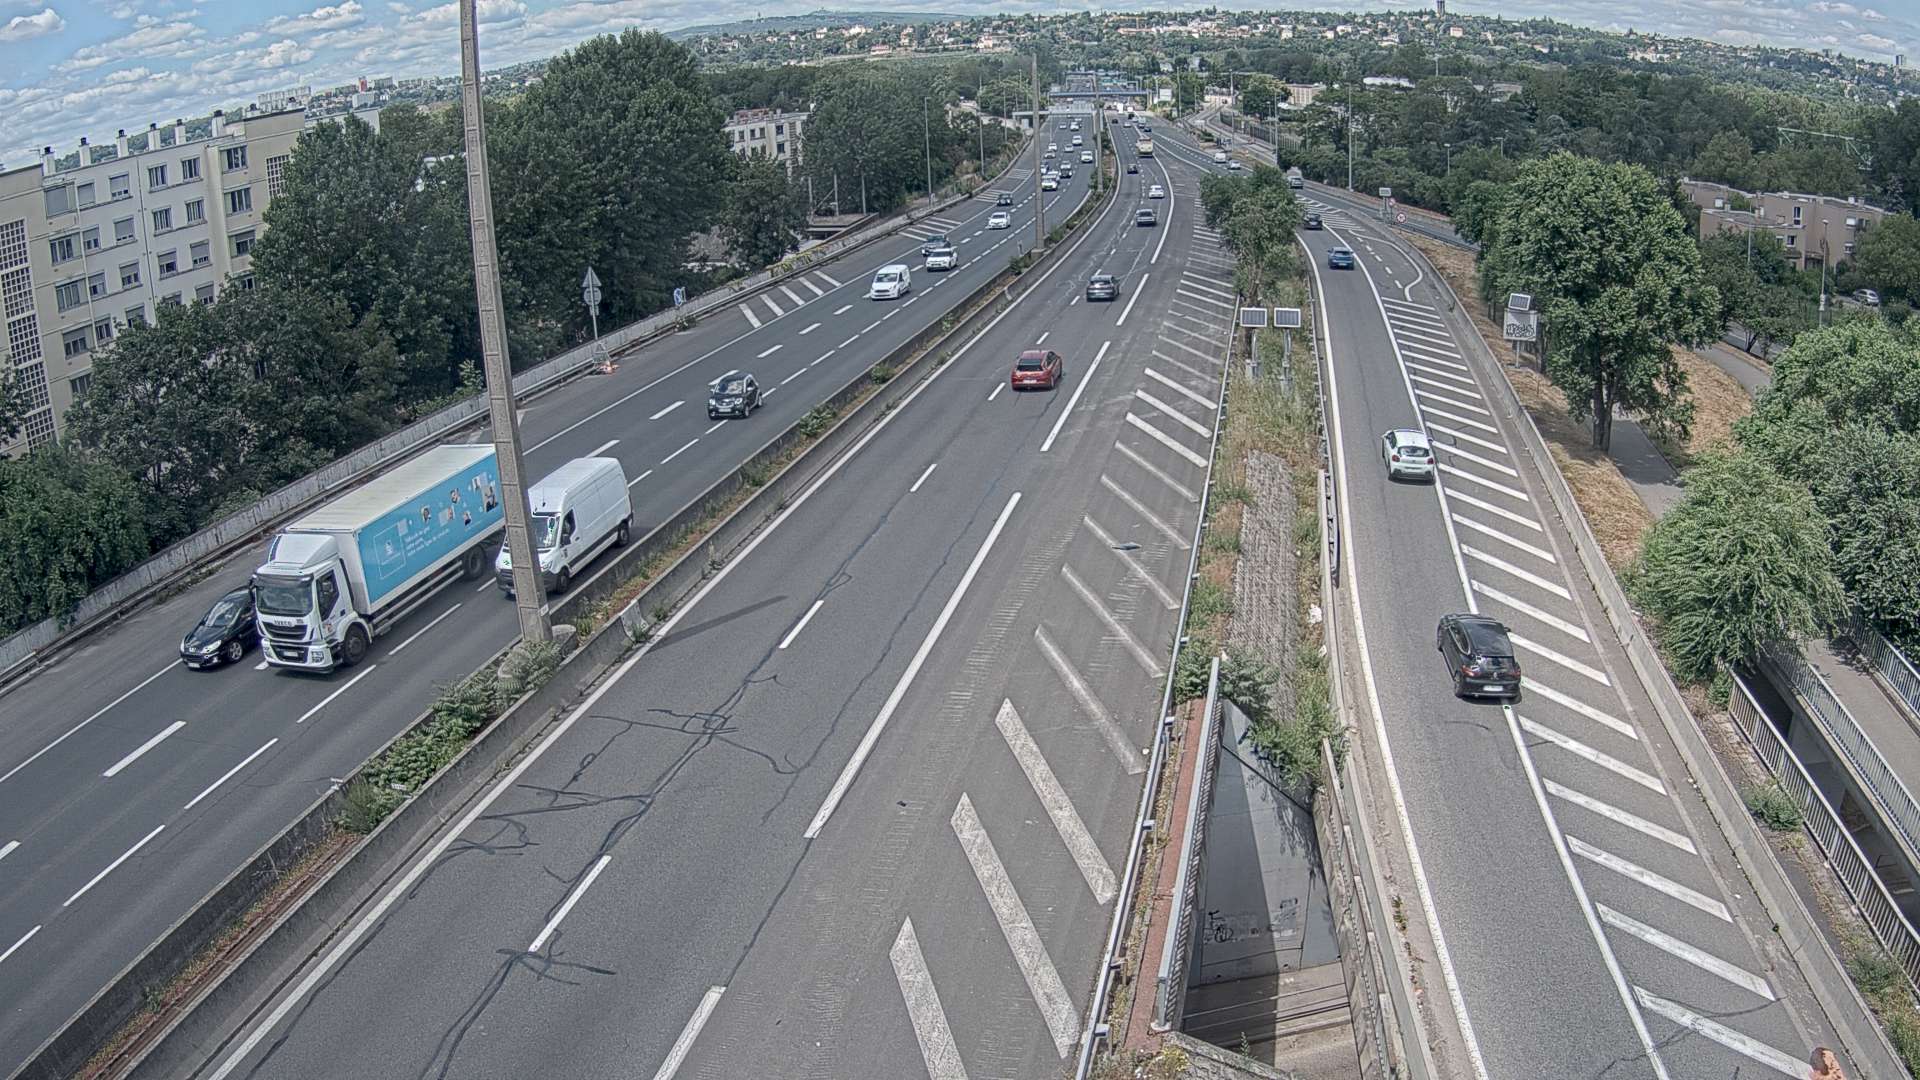 Webcam trafic à l'intersection du Boulevard Périphérique Nord, le Boulevard Périphérique Laurent Bonnevay de Lyon (D383) et l'A42, à hauteur de Villeurbanne. Vue orientée vers Rilleux-la-Pape